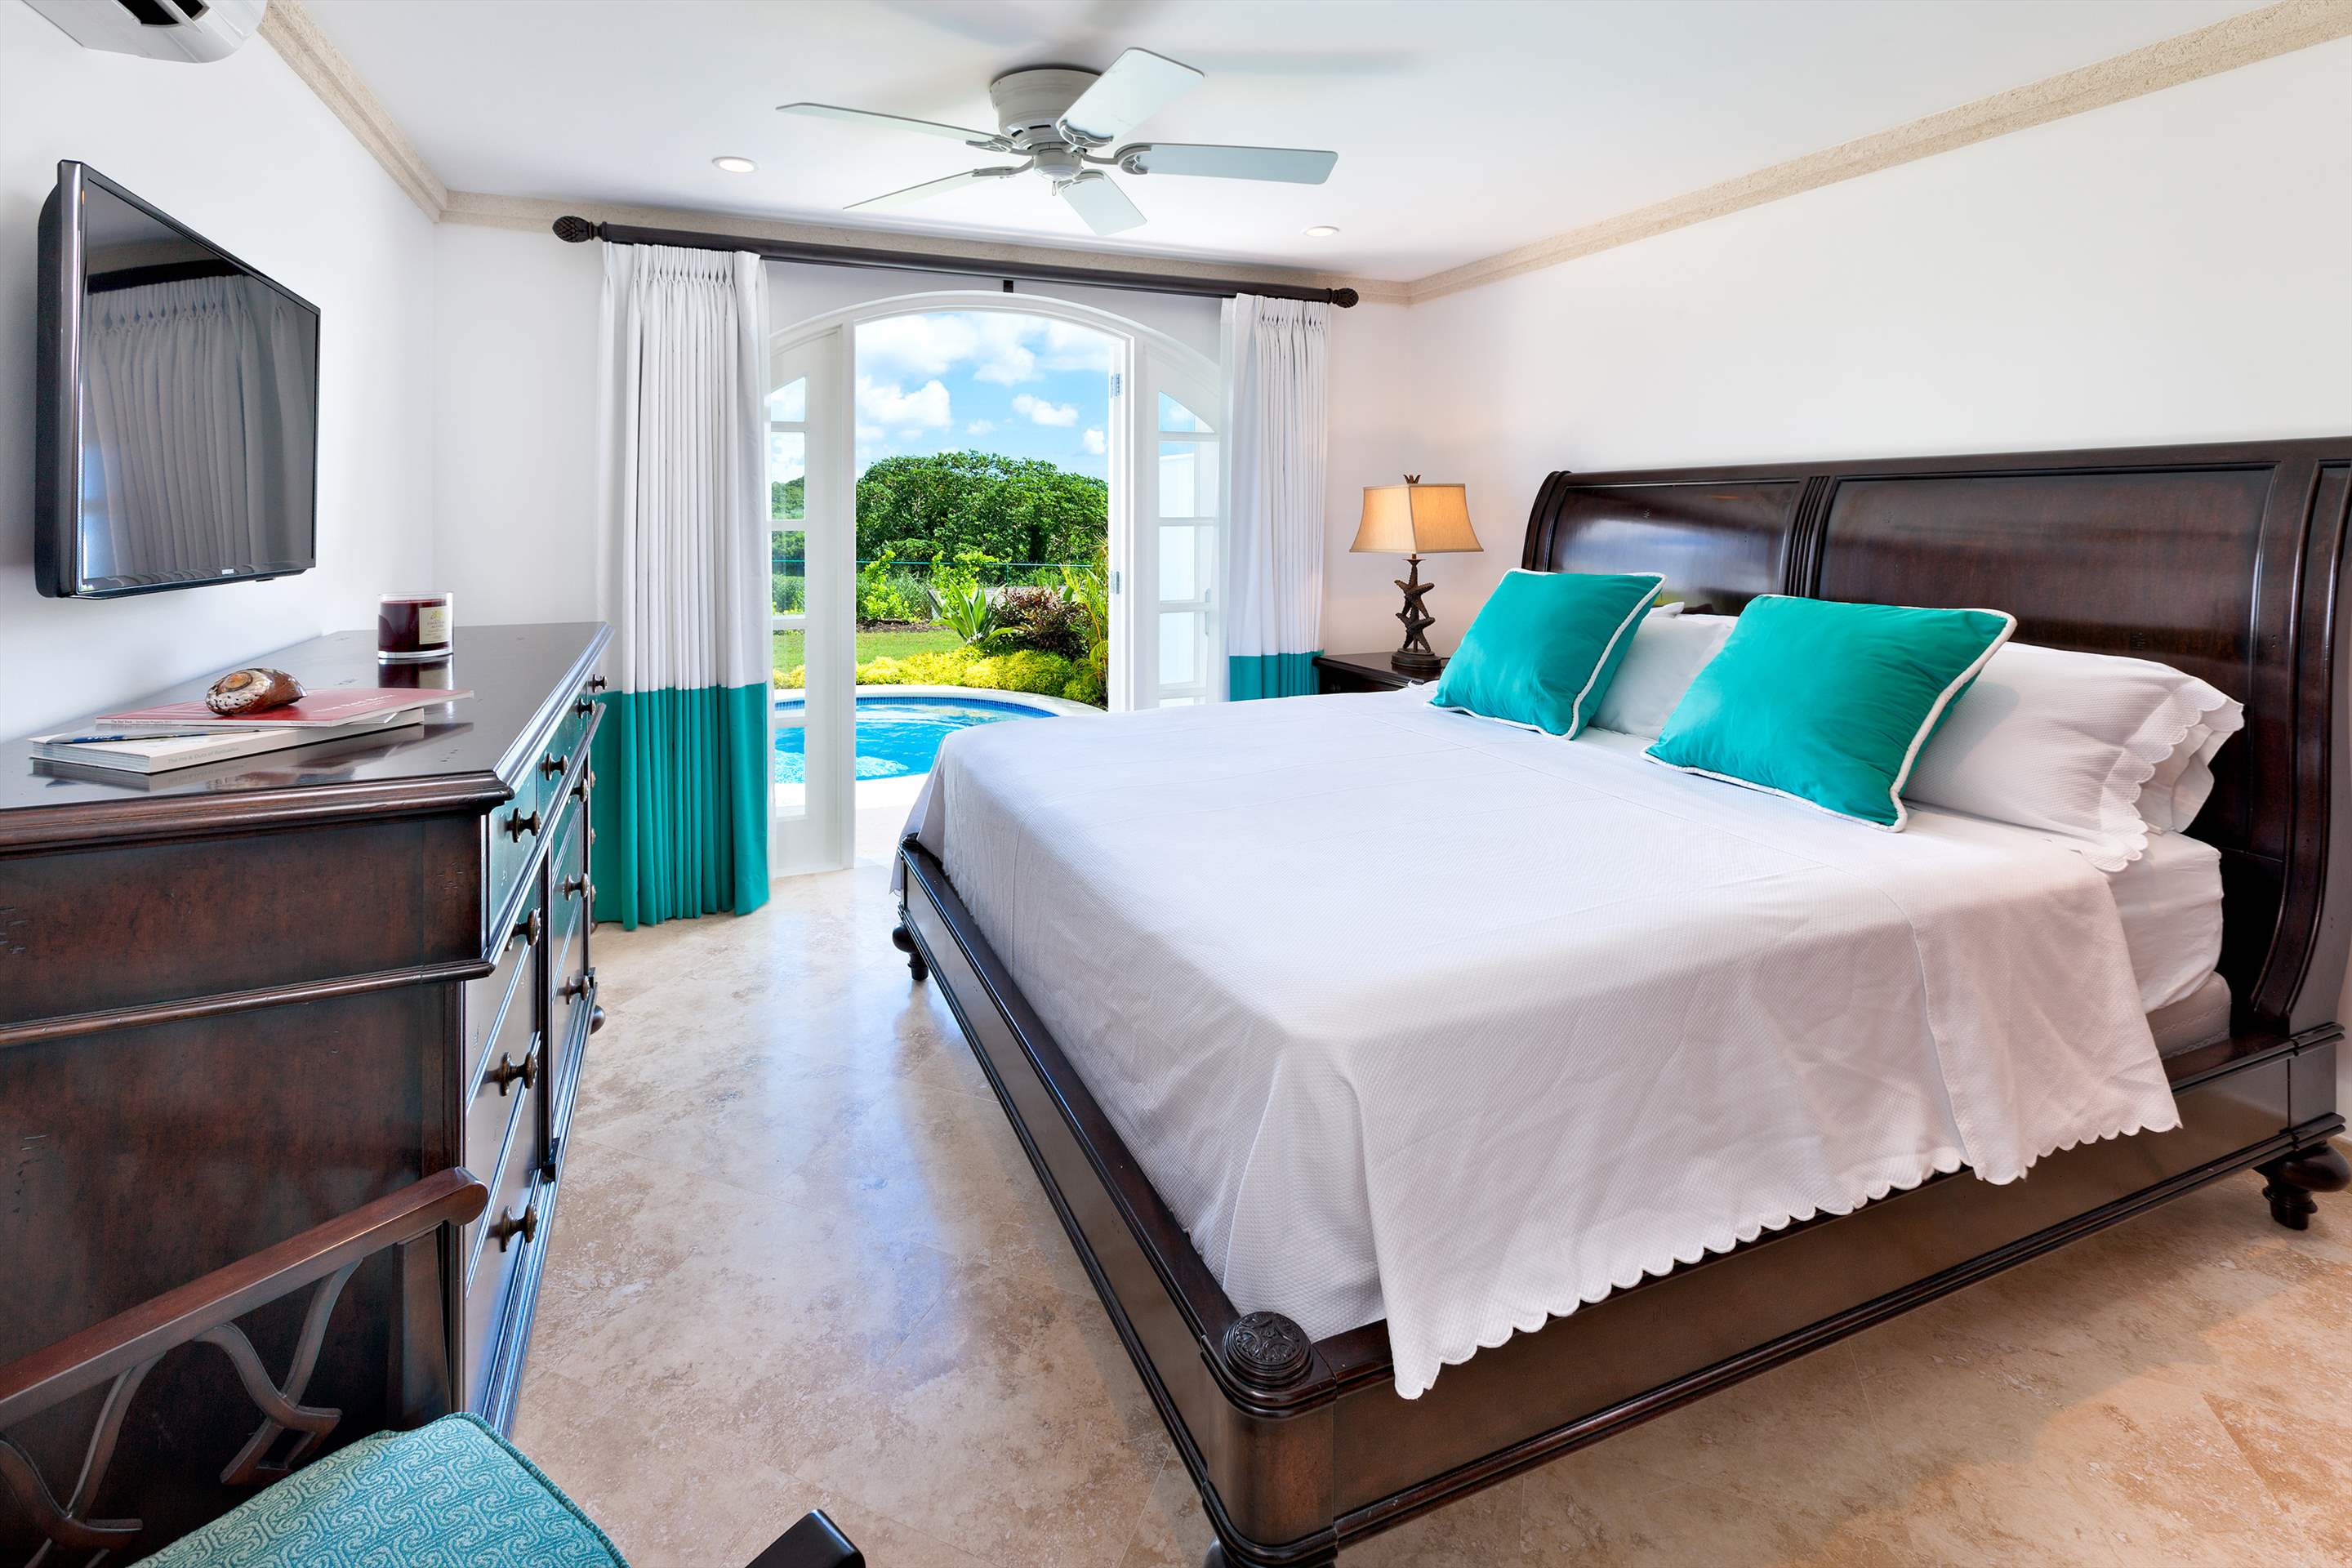 Cherry Red, Royal Westmoreland, 4 bedroom, 4 bedroom villa in St. James & West Coast, Barbados Photo #5